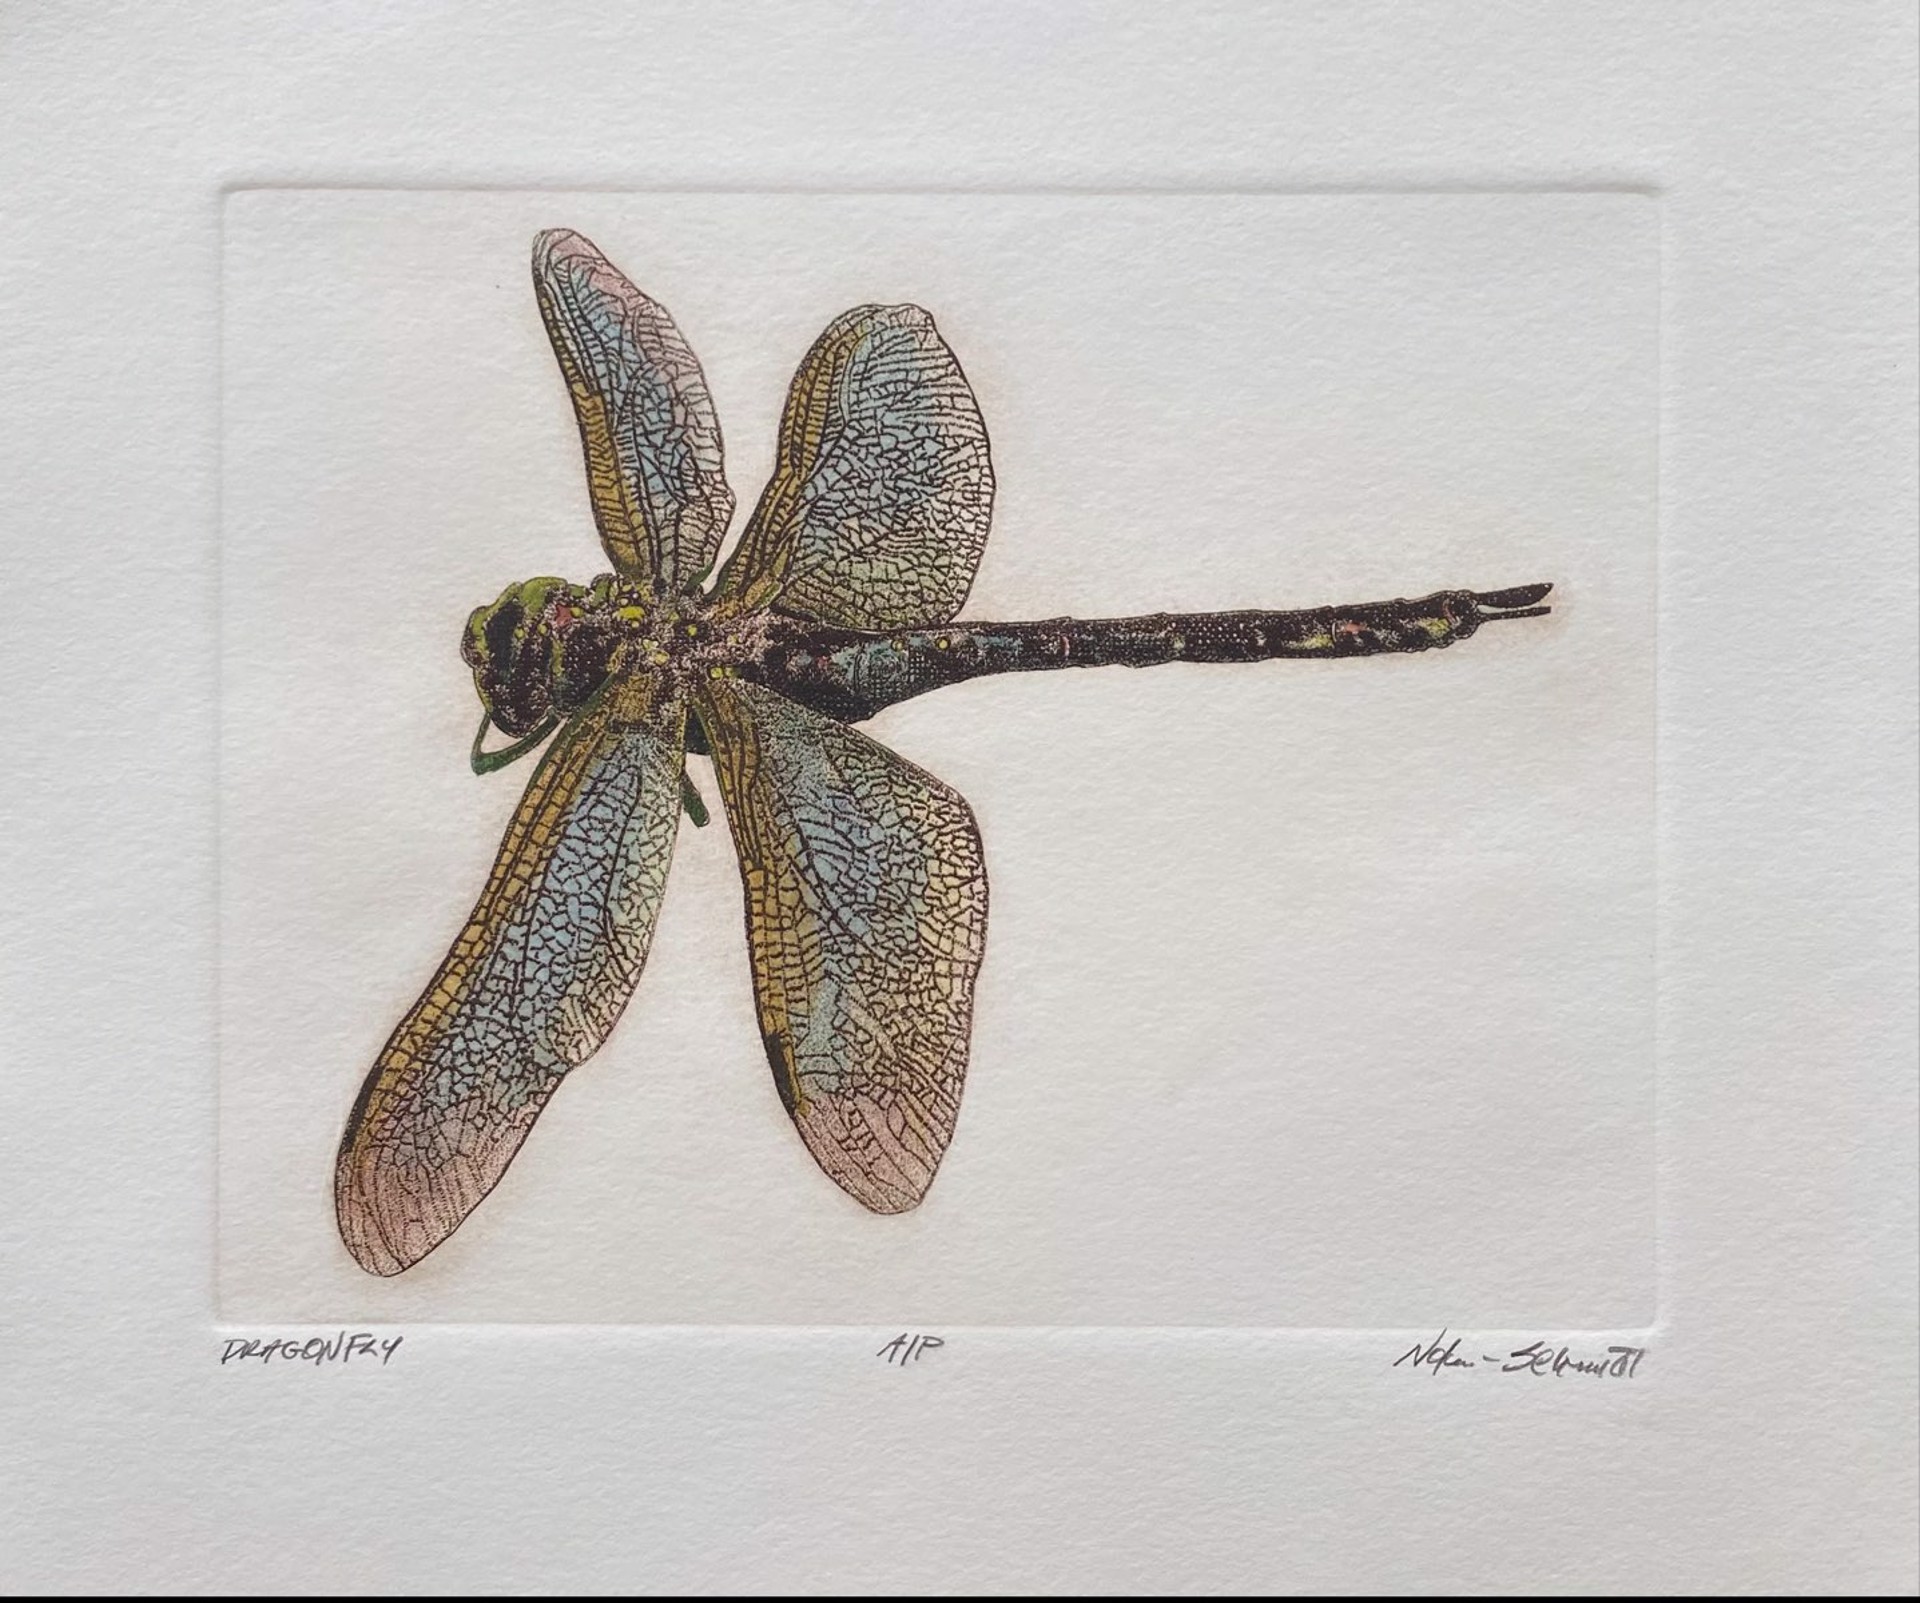 Dragonfly (Artist Proof) by William Nolen-Schmidt